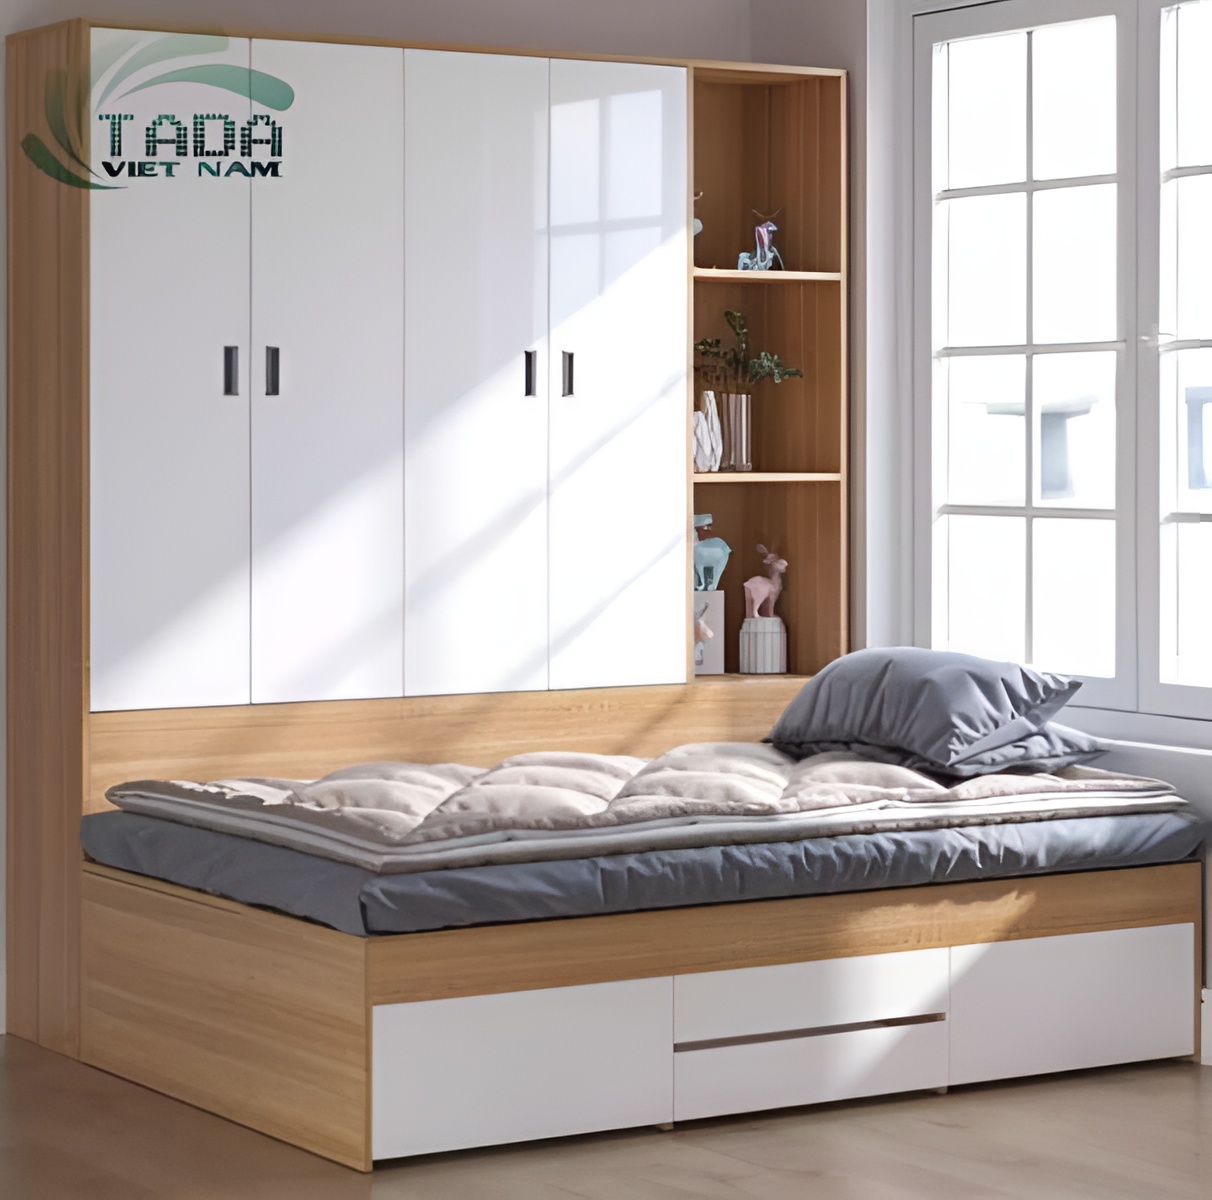 Mẫu giường liền tủ thông minh đa năng cho mọi không gian, thương hiệu Tada Việt Nam TD3194